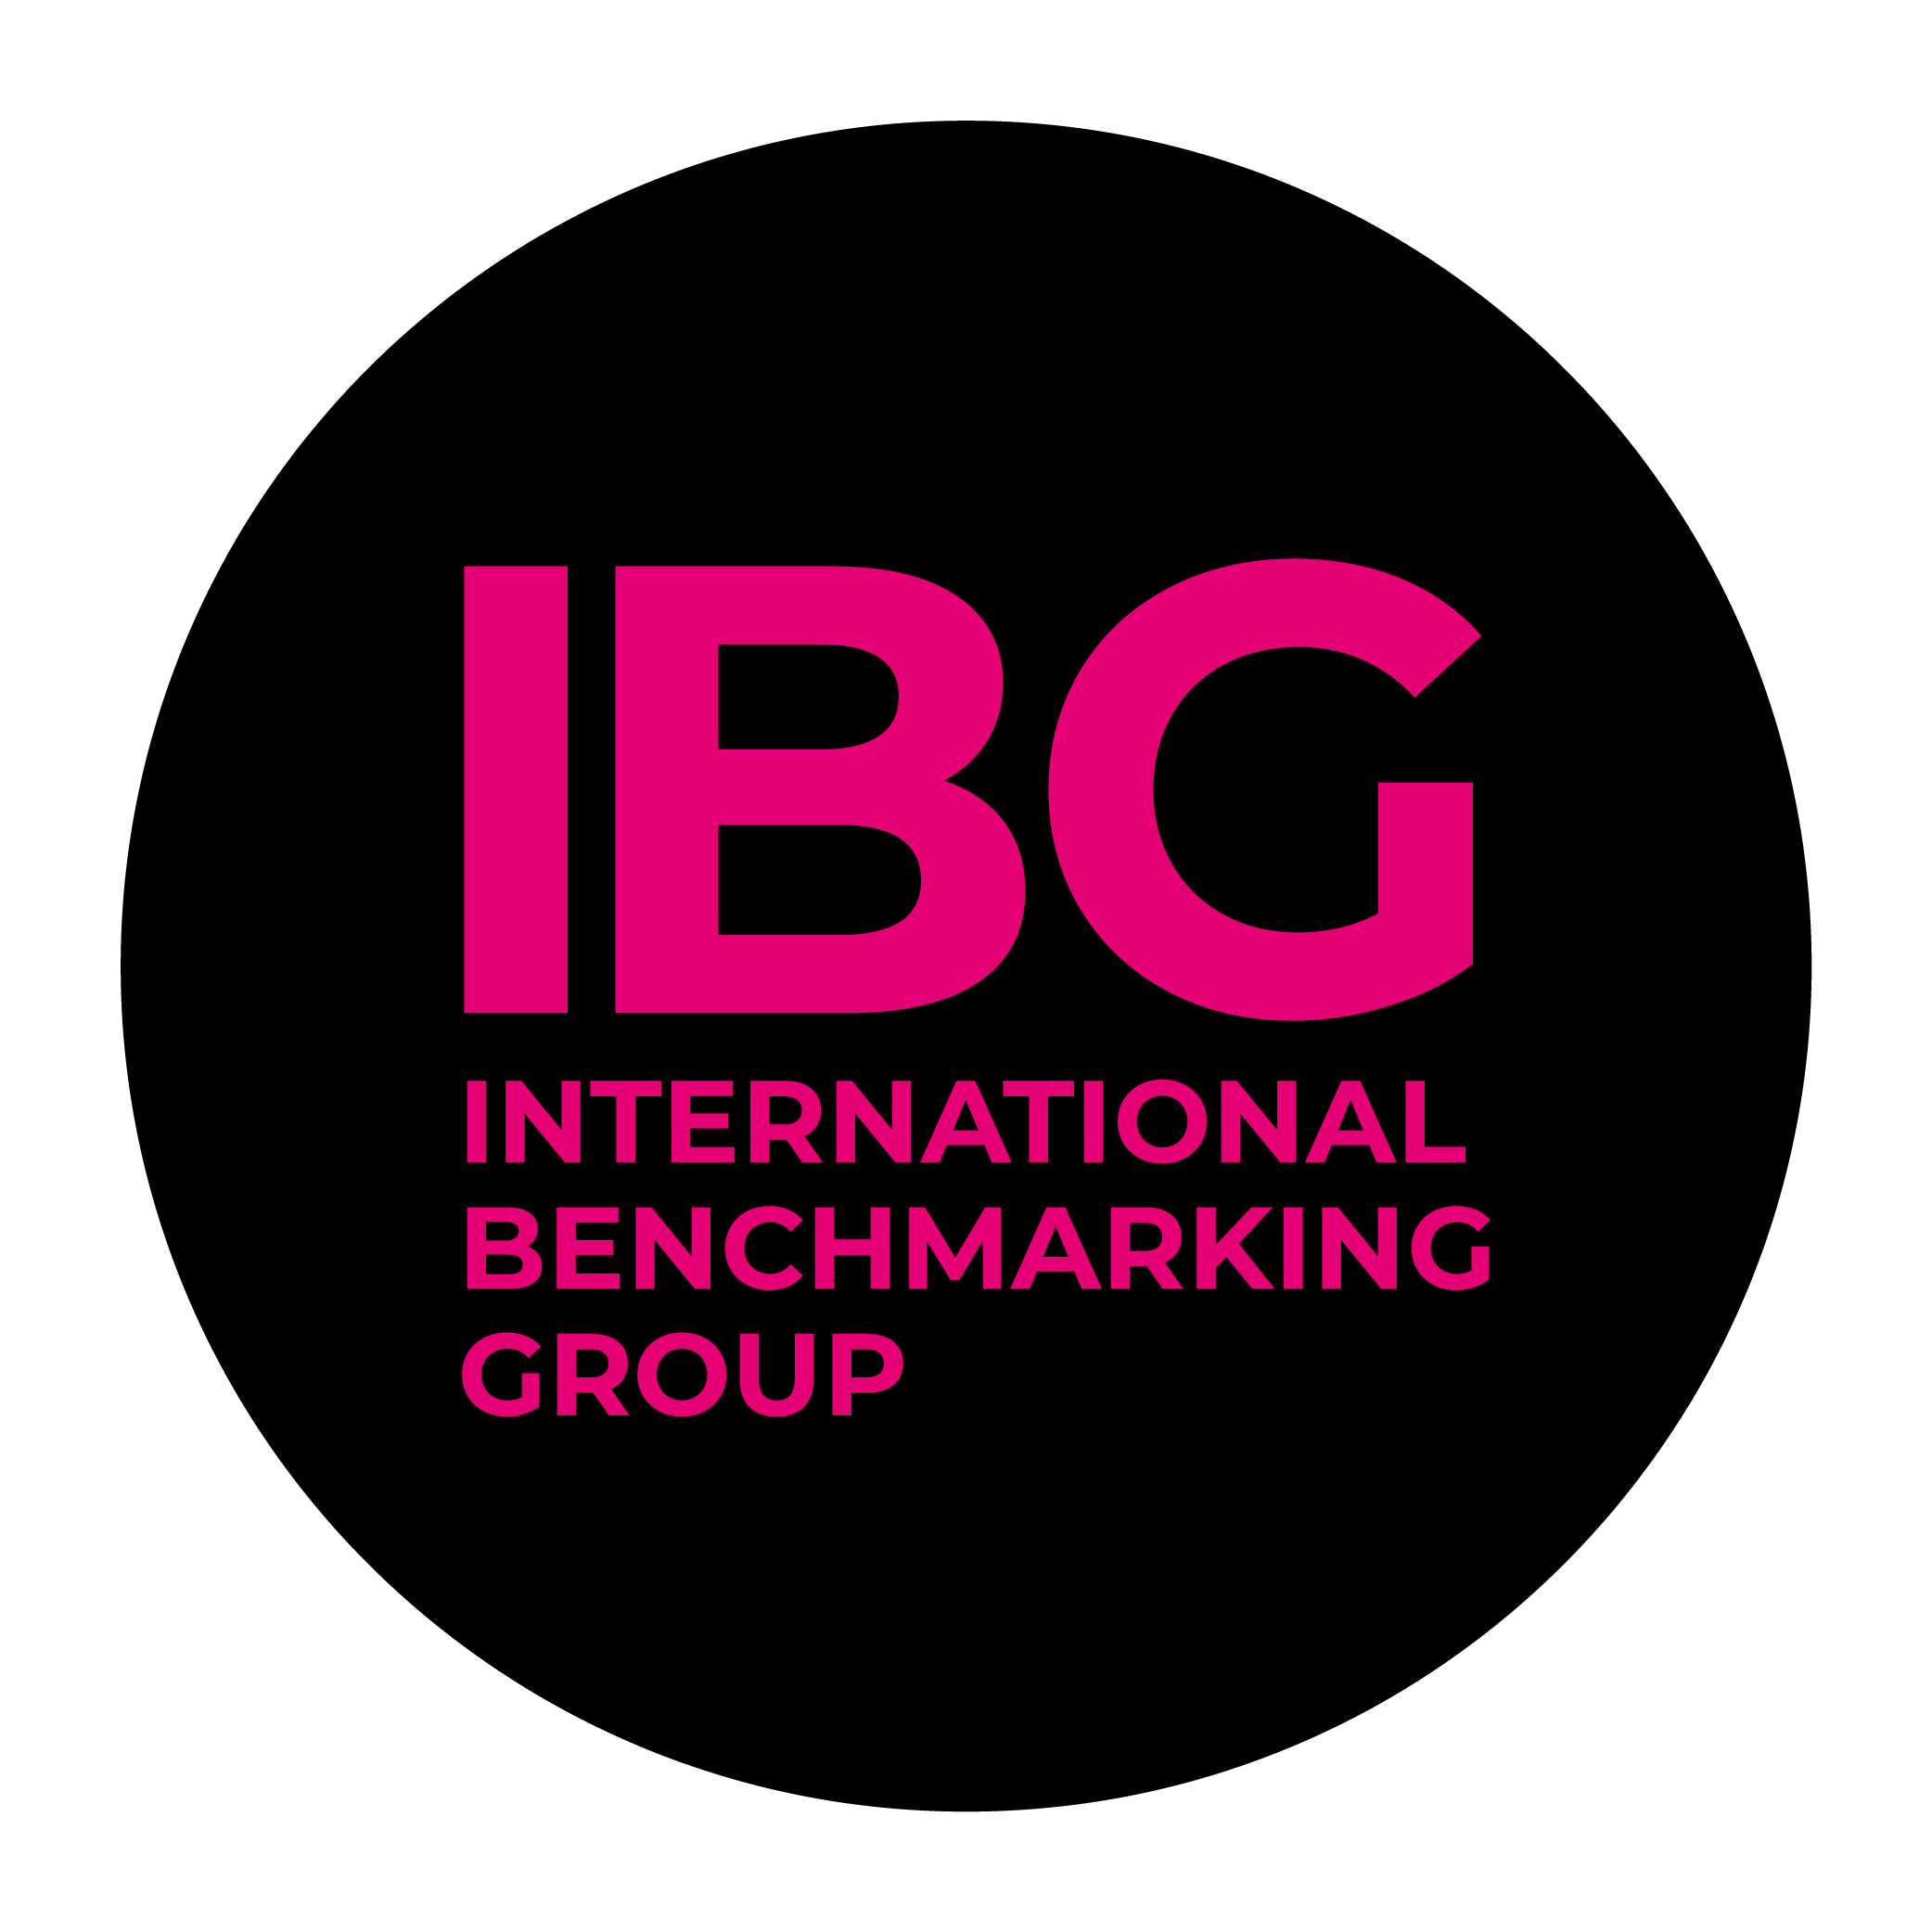 International Benchmarking Group logo.